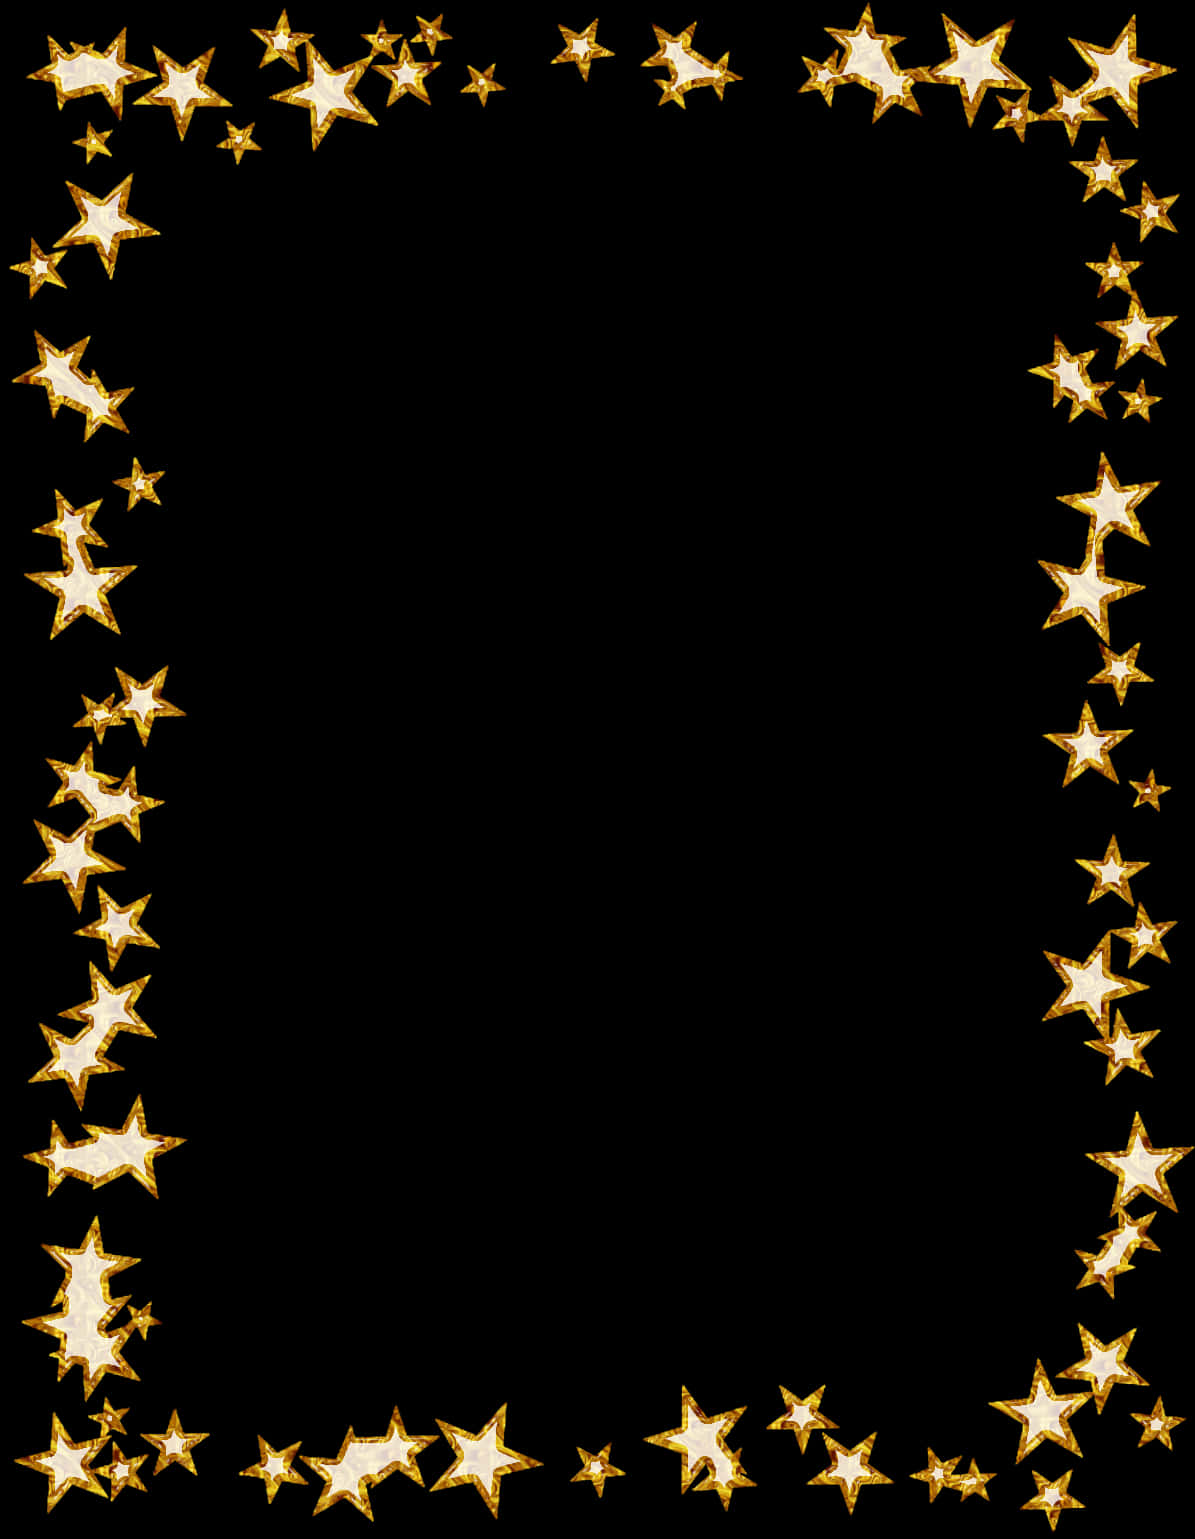 Golden Star Frame Design